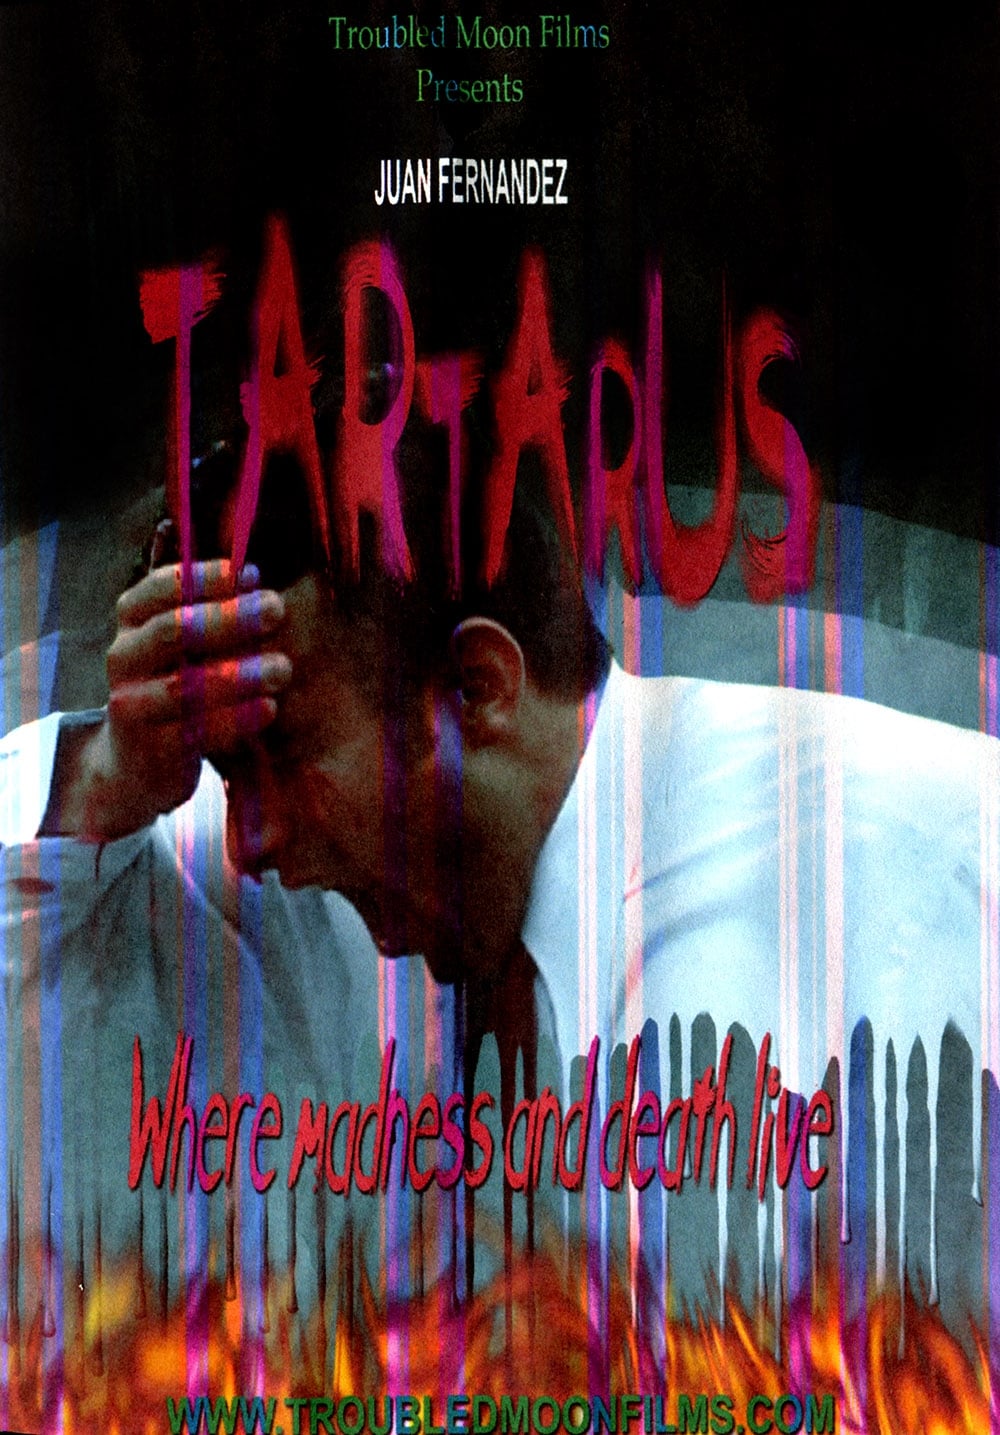 Tartarus